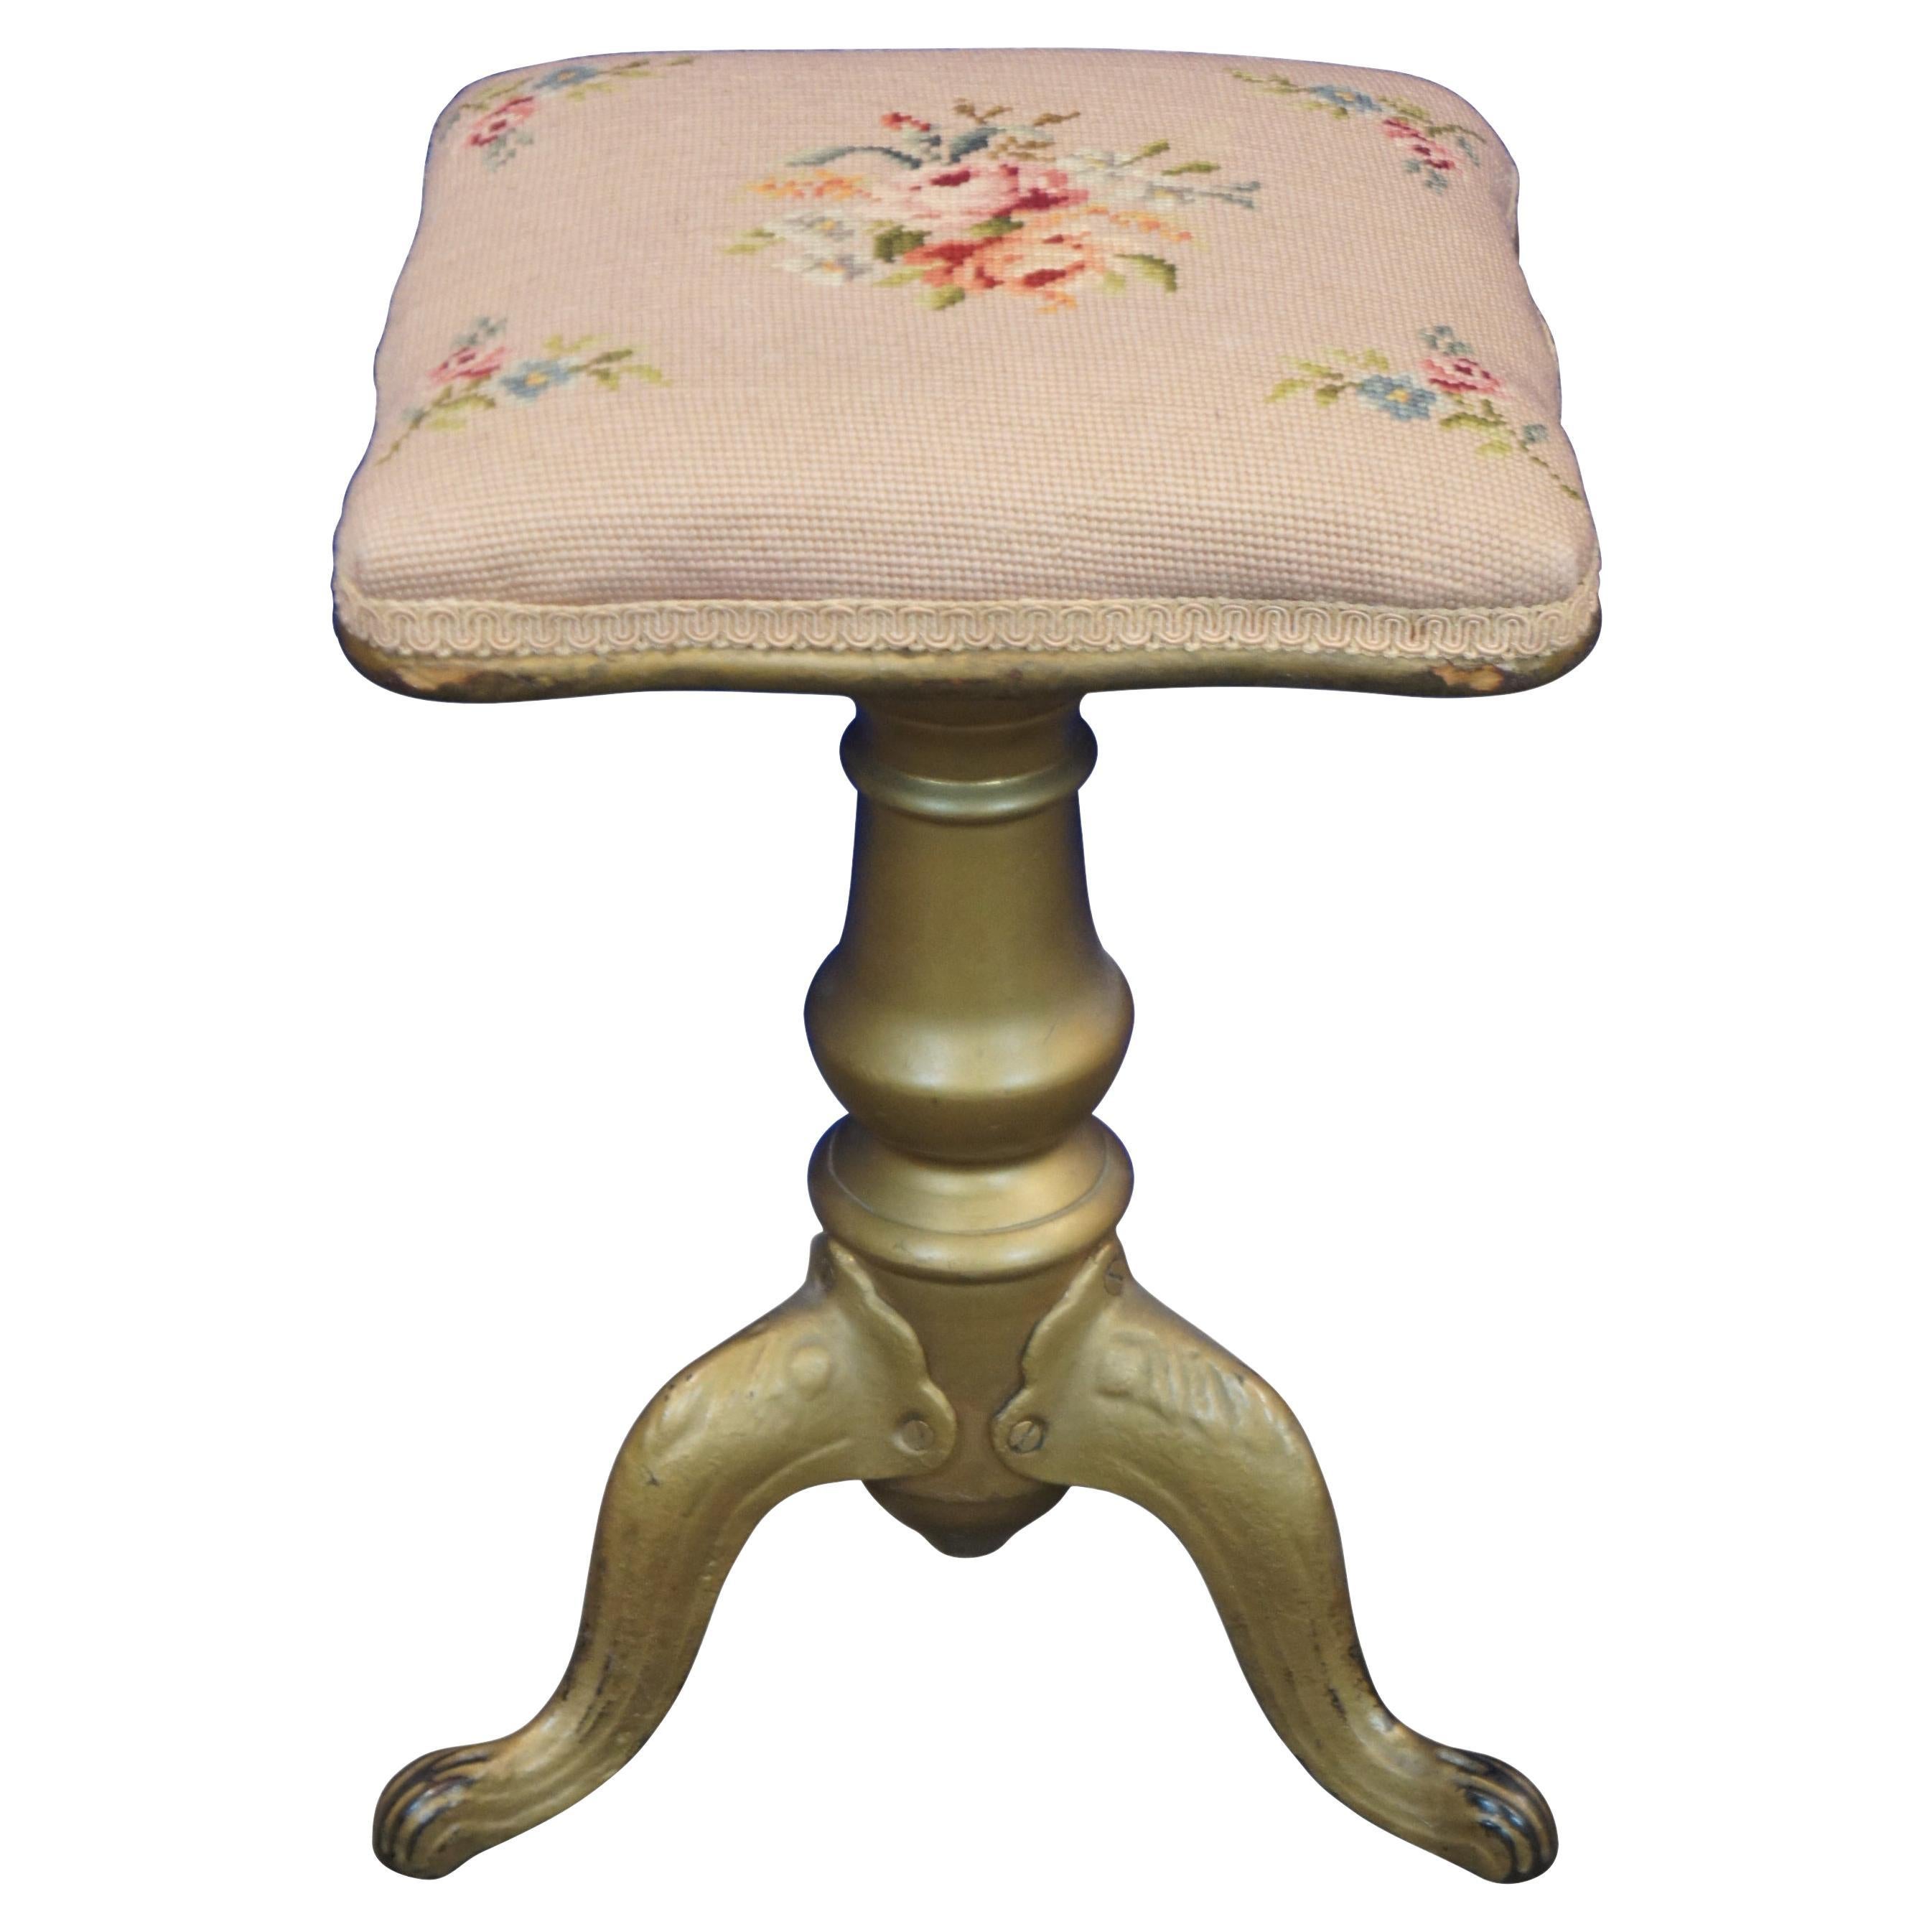 Antiker viktorianischer Klavierhocker mit balusterförmigem Sockel aus Holz und Metall mit goldfarben lackierten Cabriole-Füßen und einem quadratischen, höhenverstellbaren Sitz, der mit rosafarbener Blumennadelspitze bezogen ist.

Maße: 12